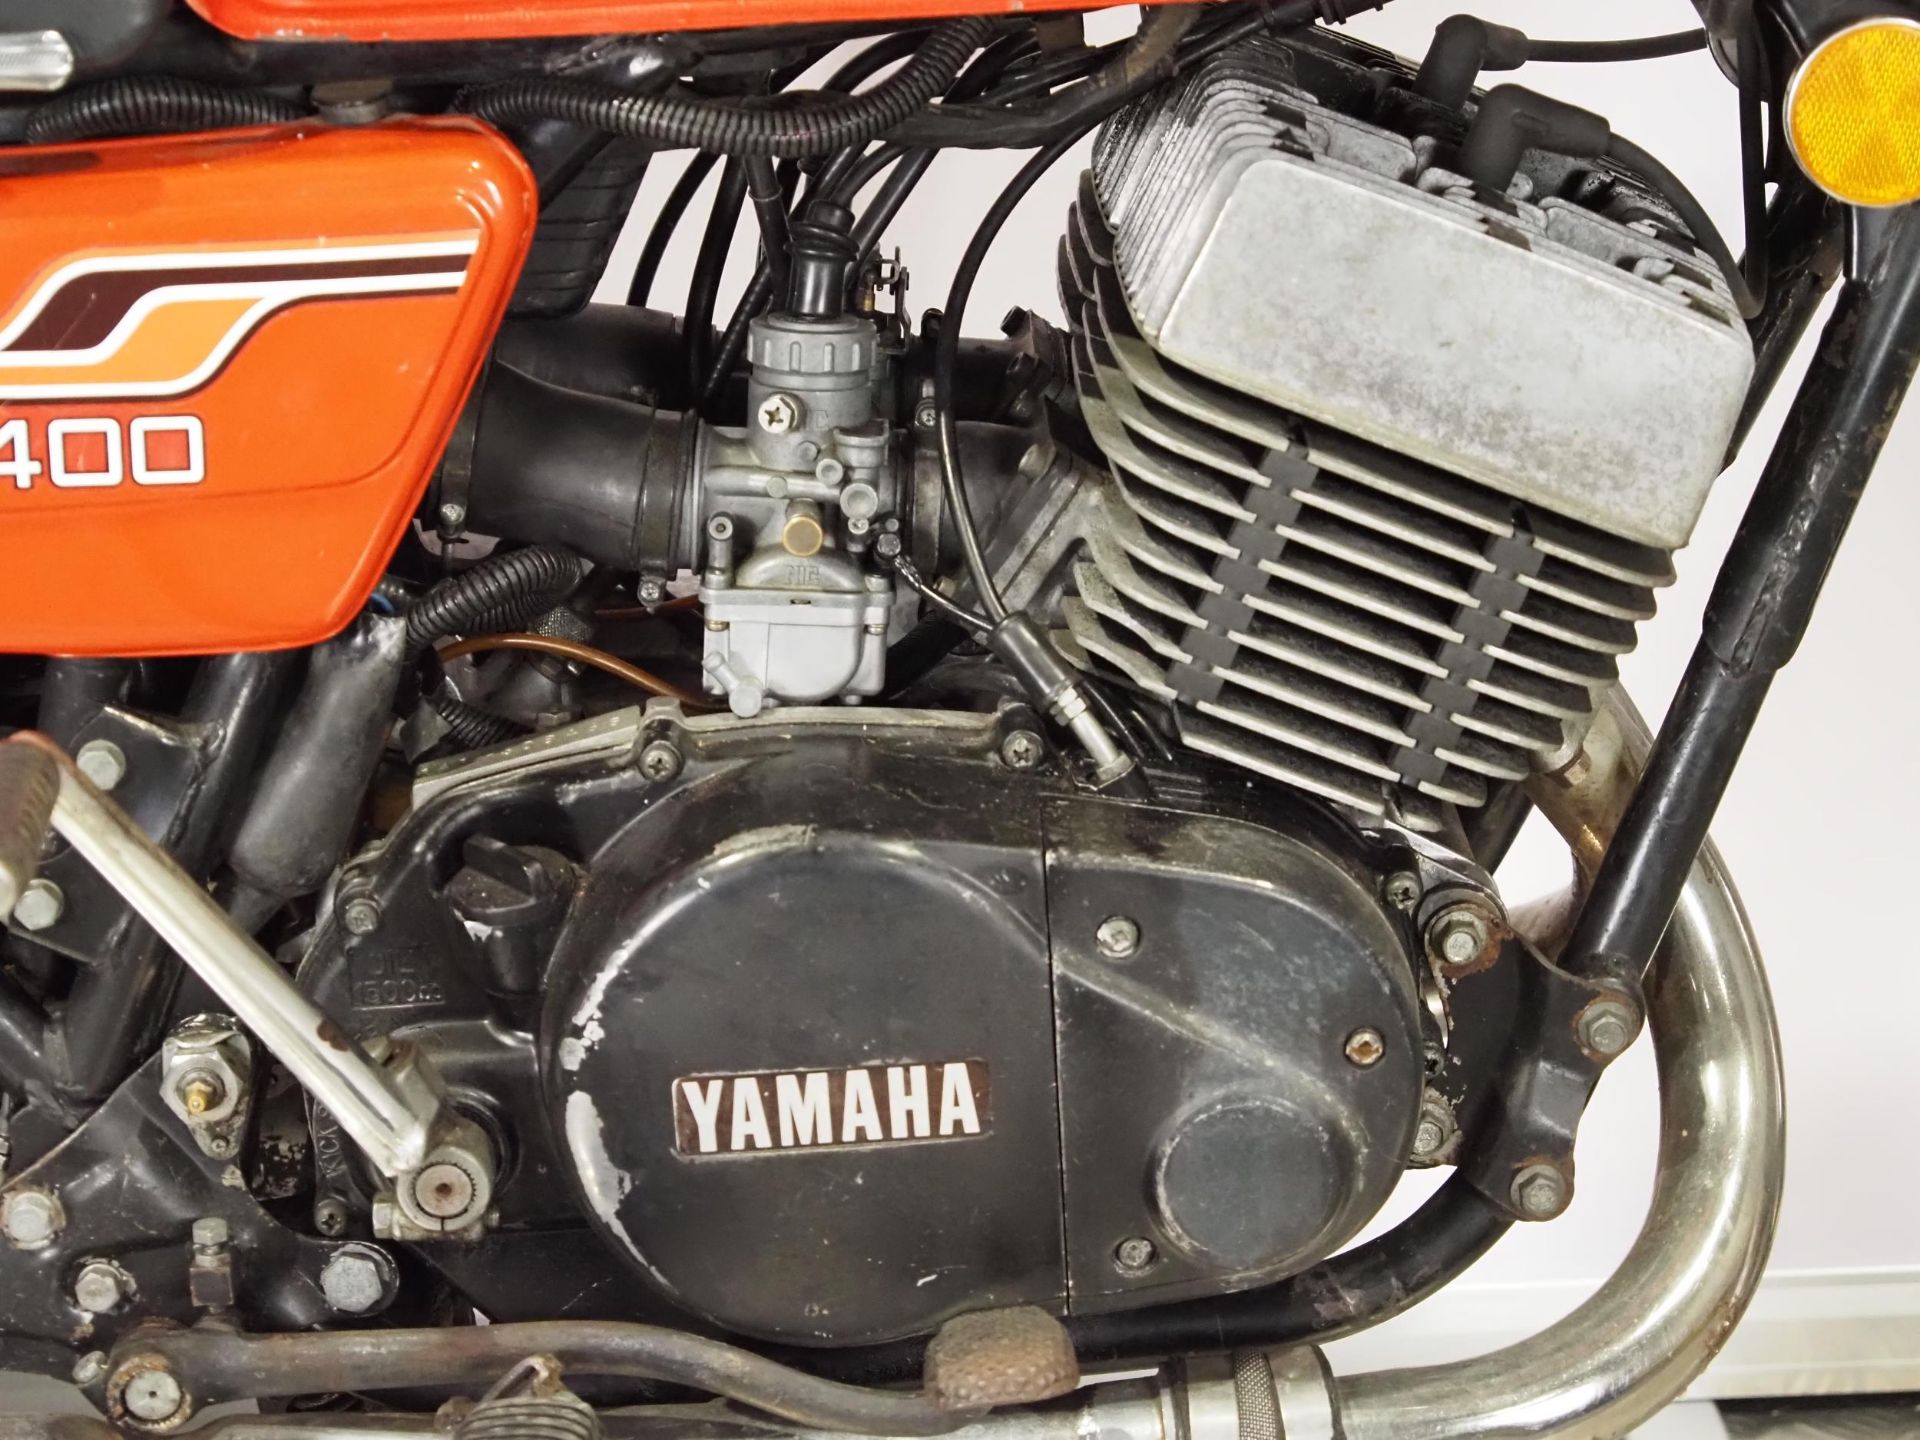 Yamaha RD400 motorcycle. 1976. 399cc. Frame No. 1A1008827 Engine No. 1A1-308468 Runs and rides. - Bild 4 aus 6